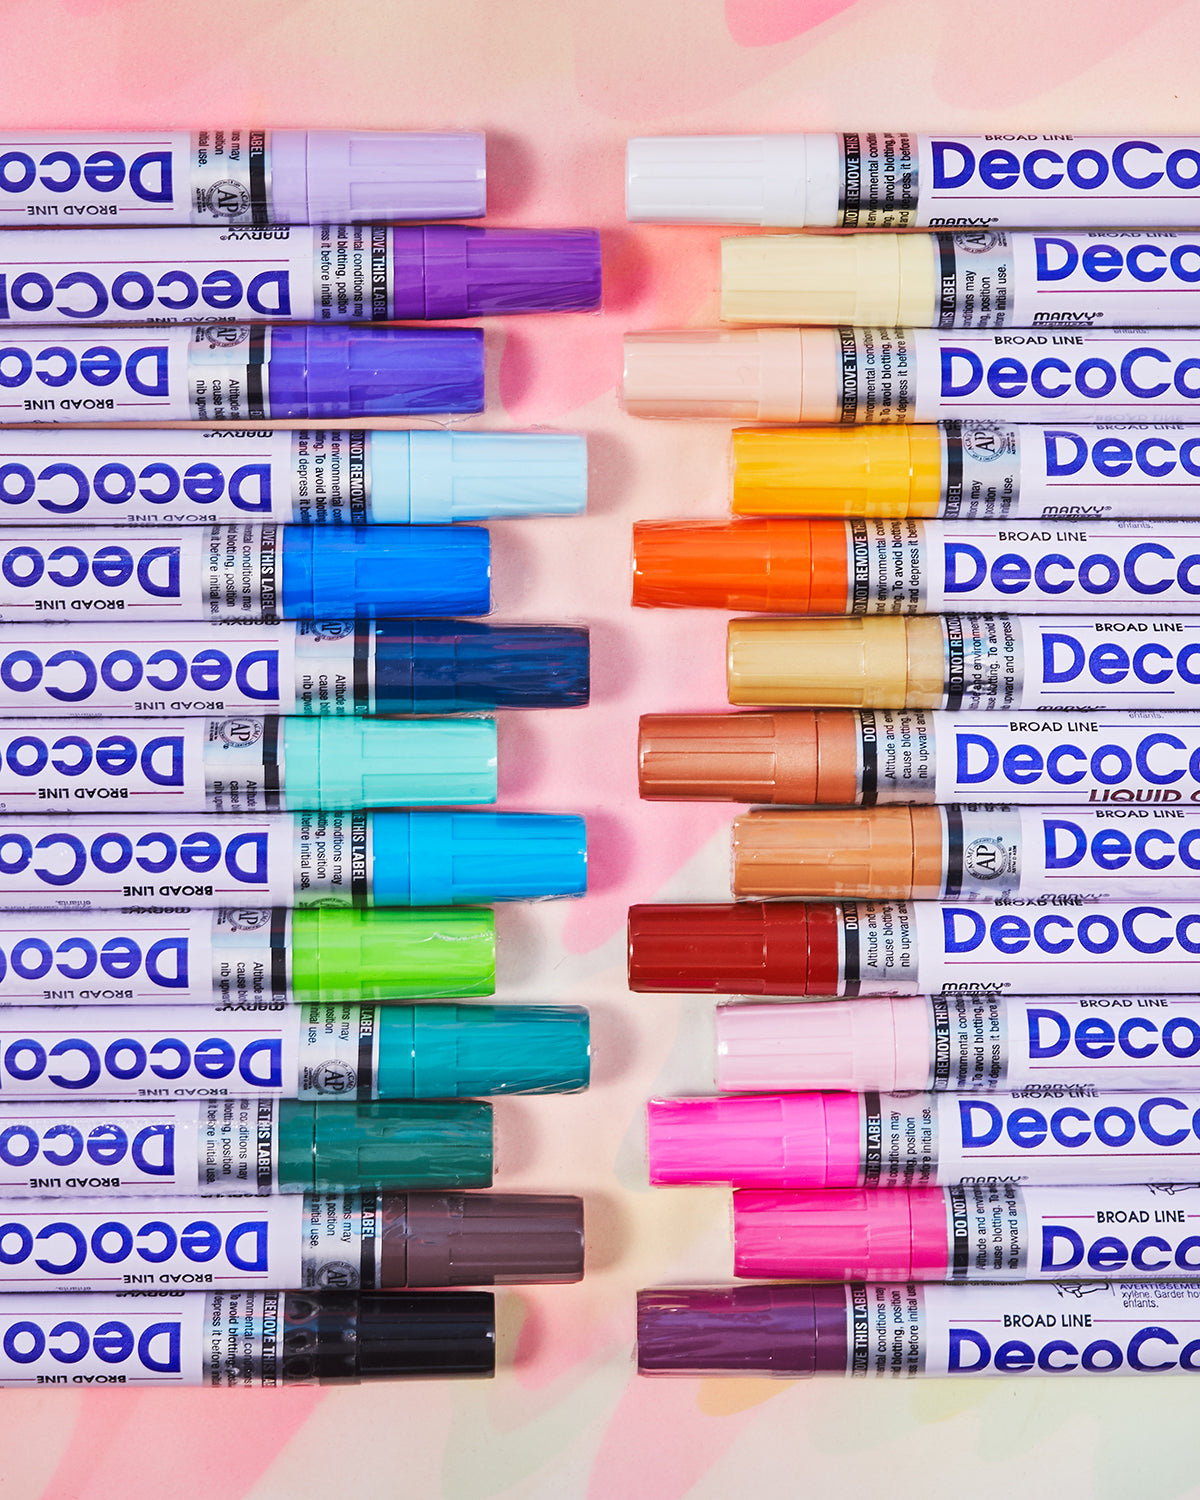 DecoColor Broad Tip Paint Marker Set 6/Pkg Retro